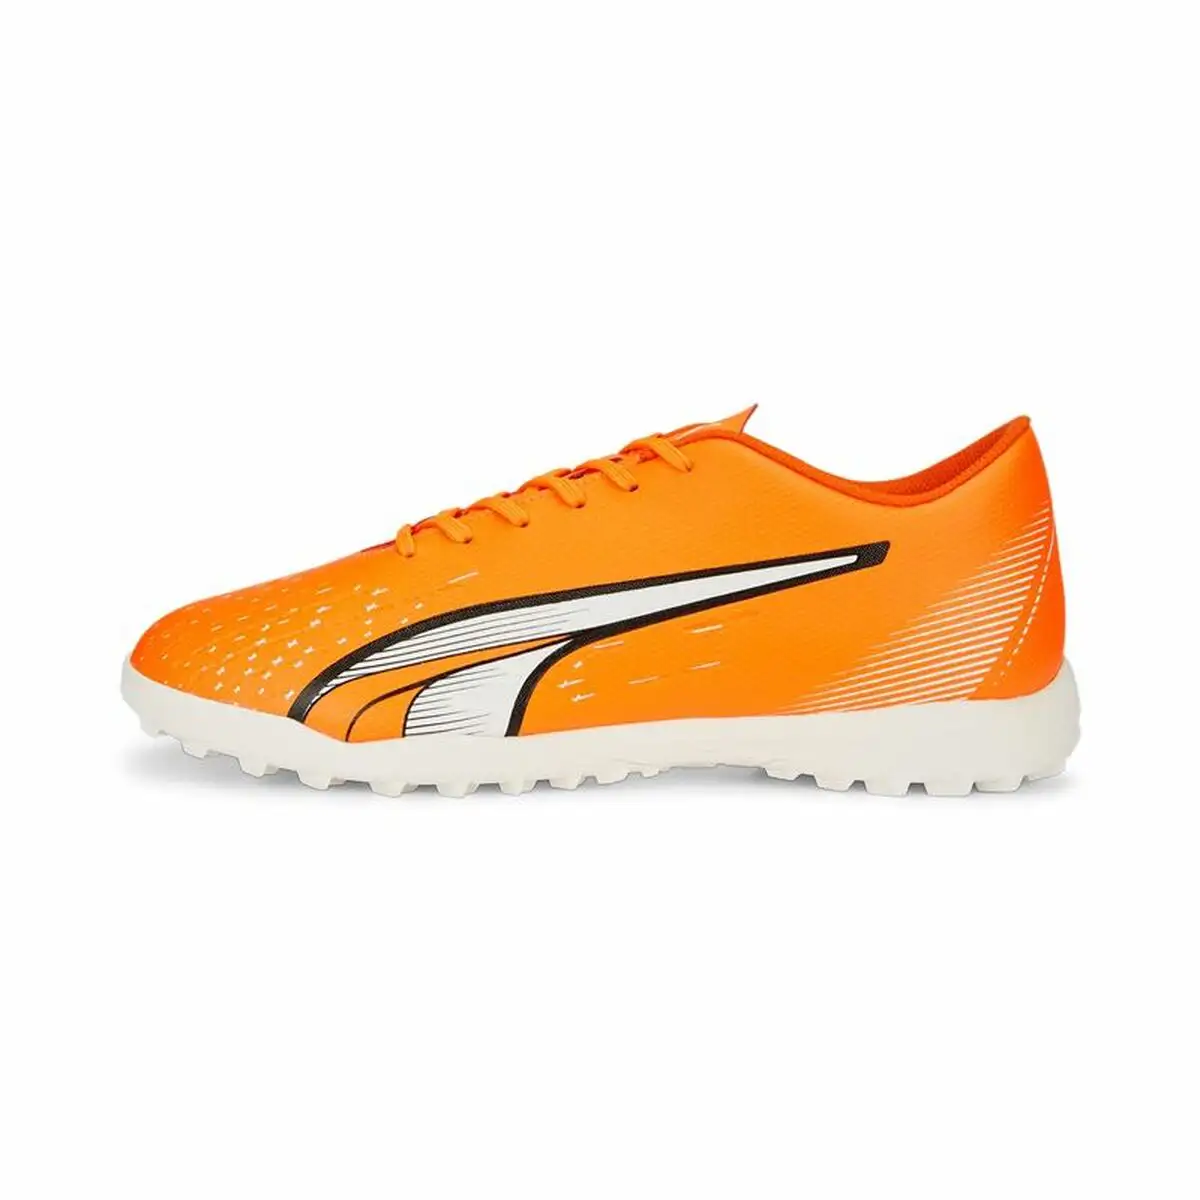 Chaussures de football pour adultes puma ultra play tt orange unisexe_9729. DIAYTAR SENEGAL - Votre Destination pour un Shopping Inoubliable. Naviguez à travers notre catalogue et choisissez des produits qui vous marquent par leur originalité.